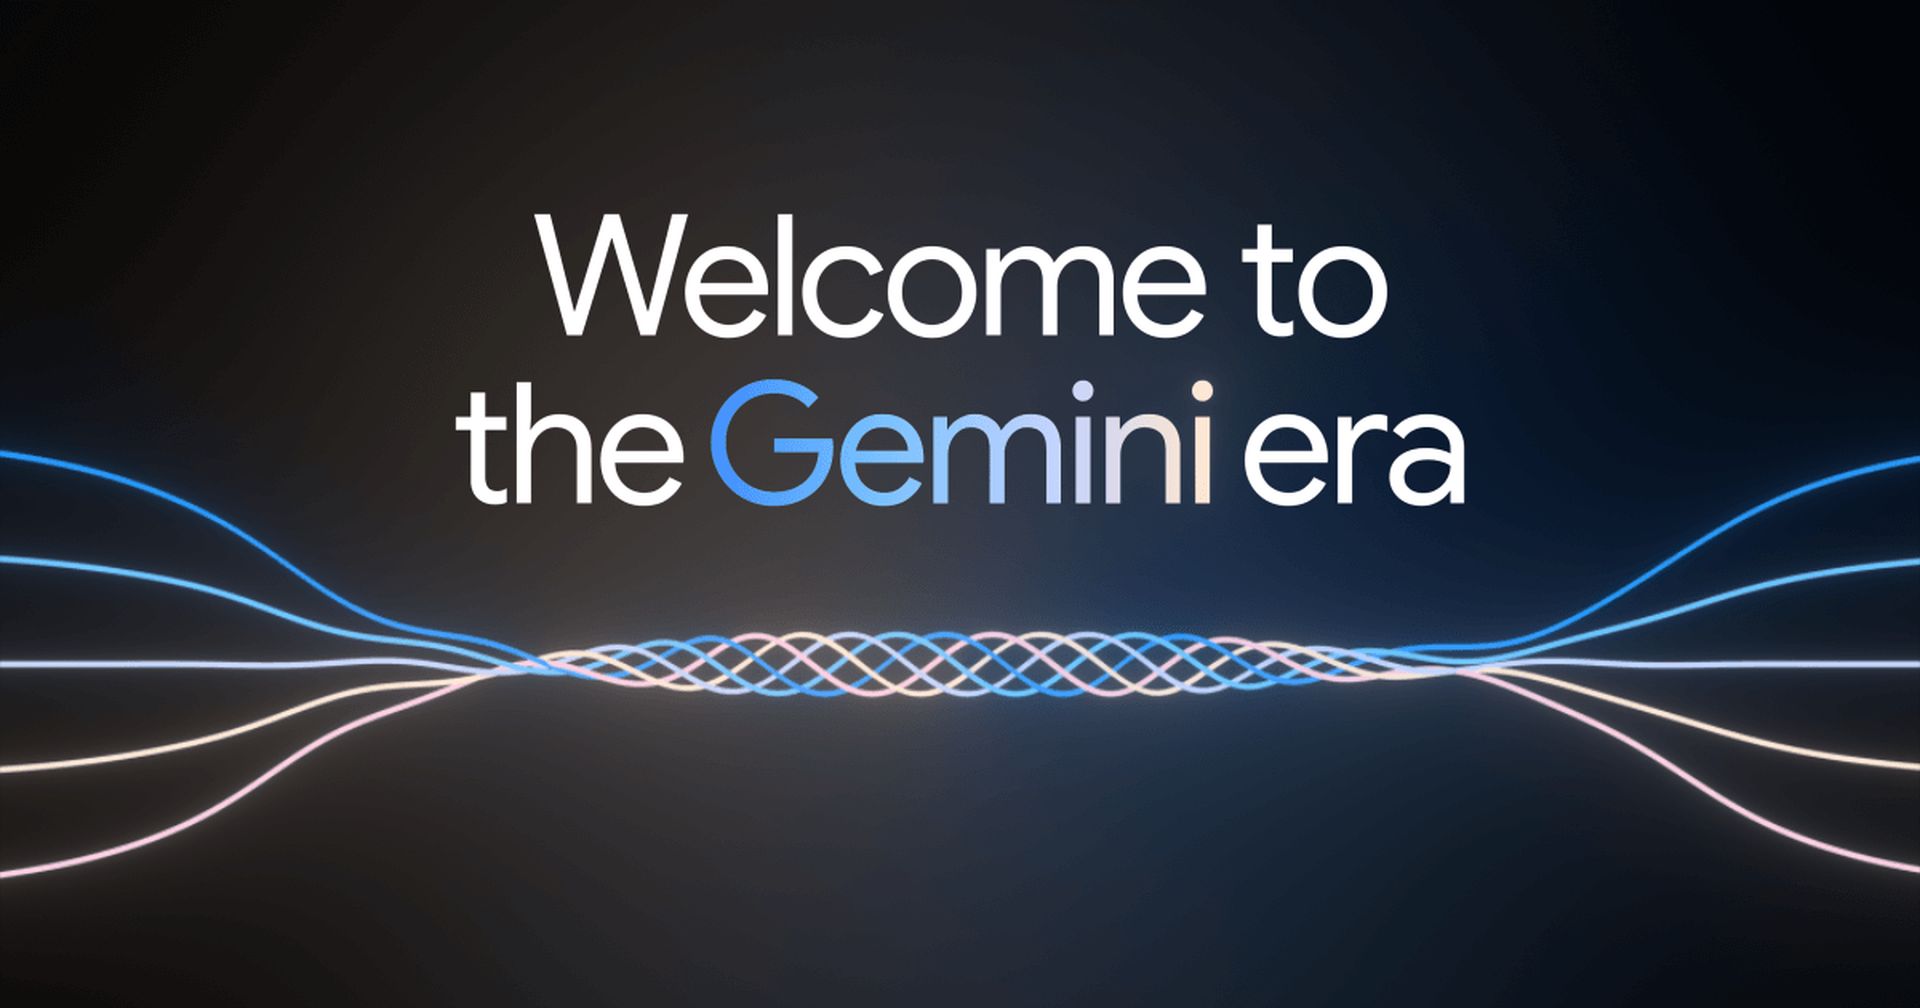 Google gemini 1.5. Гугл Гемини. Agi искусственный интеллект. Gemini Ultra. Сильный (agi) искусственный интеллект.